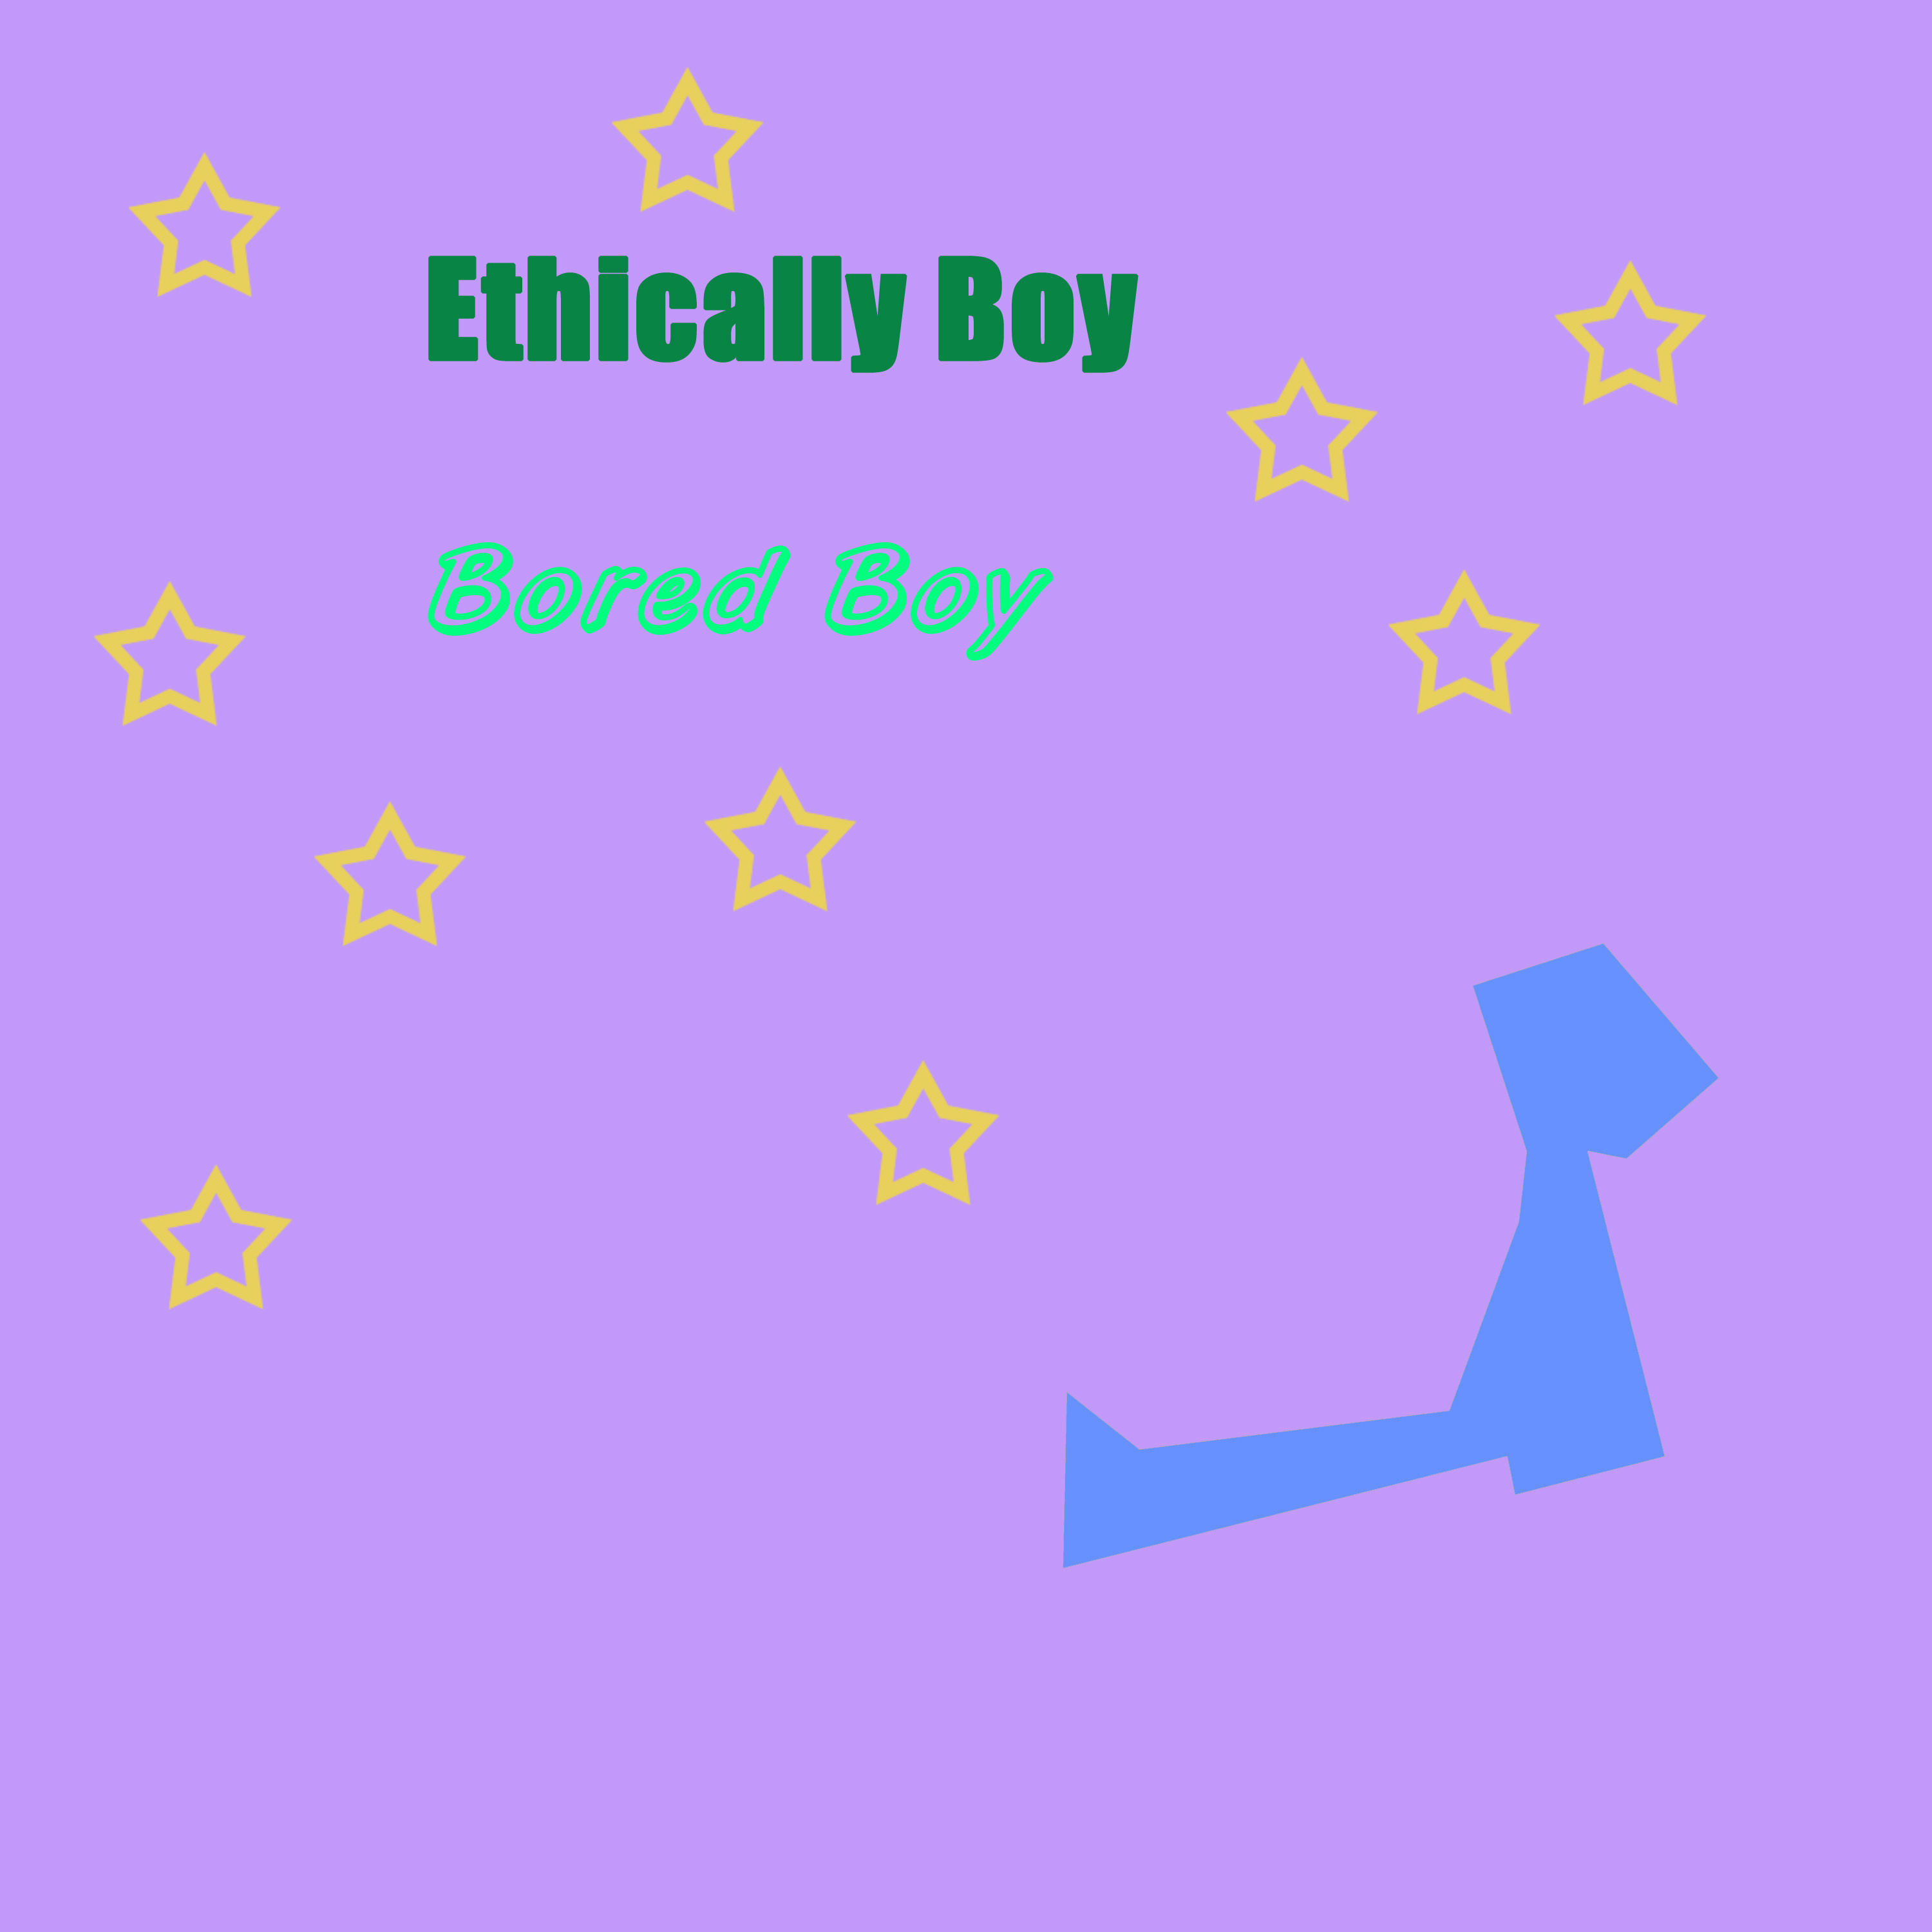 Exert Boy